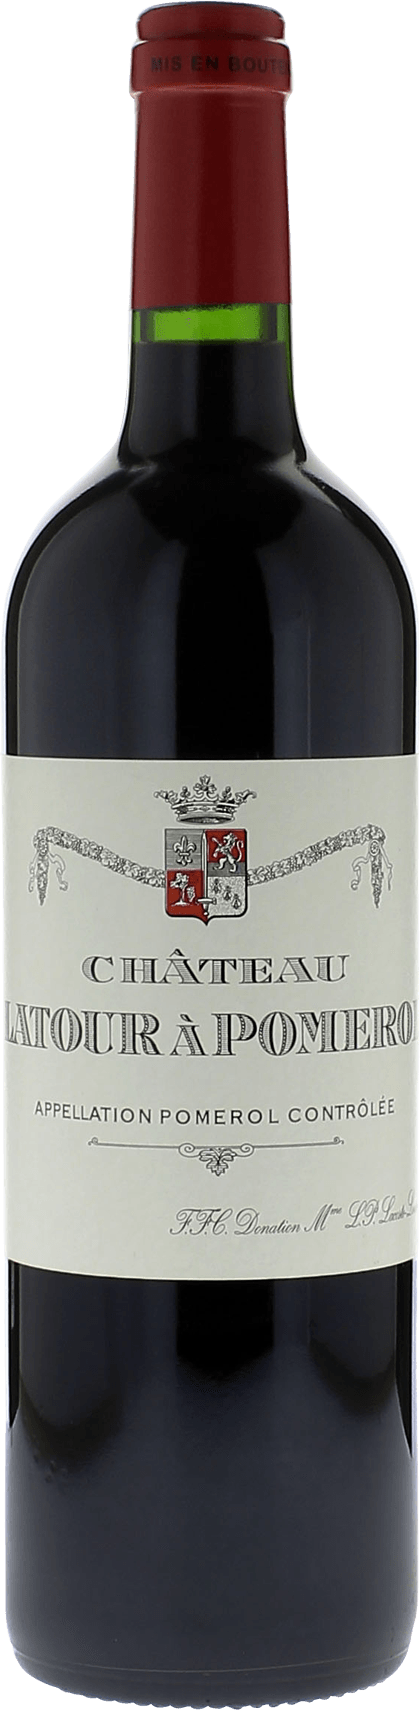 Latour  pomerol 2013  Pomerol, Bordeaux rouge